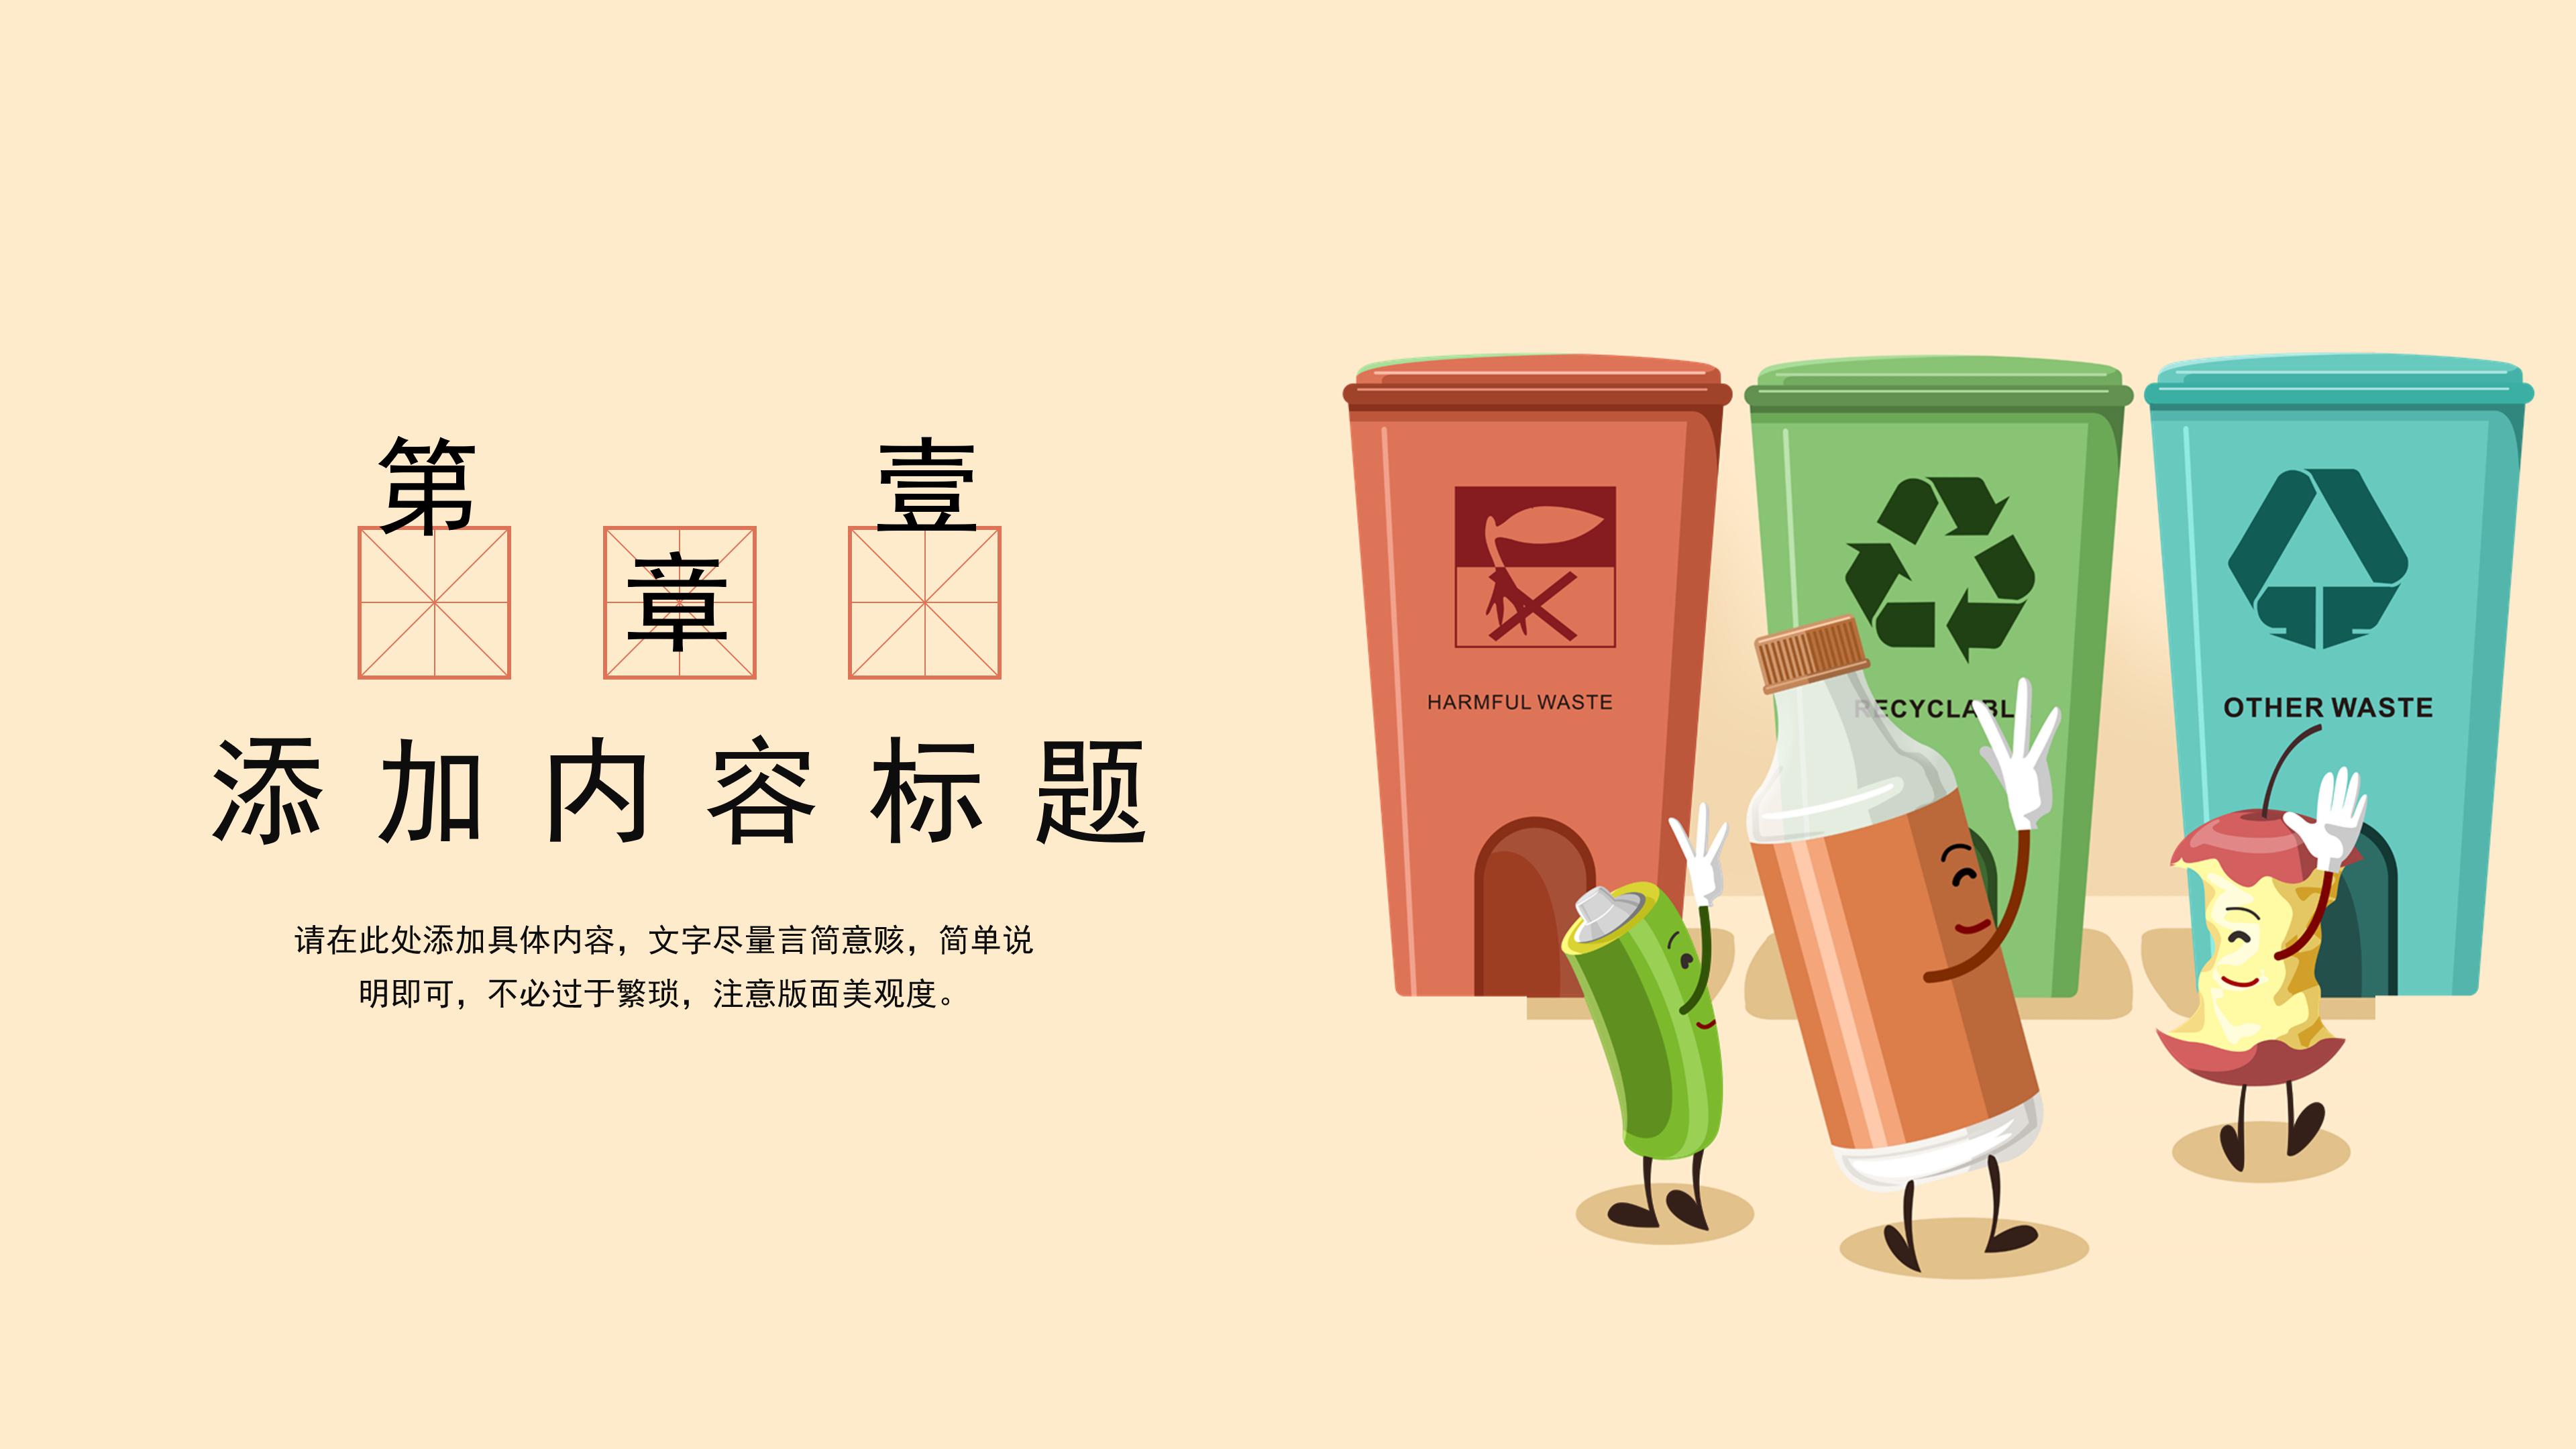 可爱卡通三维动画效果垃圾分类环保公益宣传PPT模板